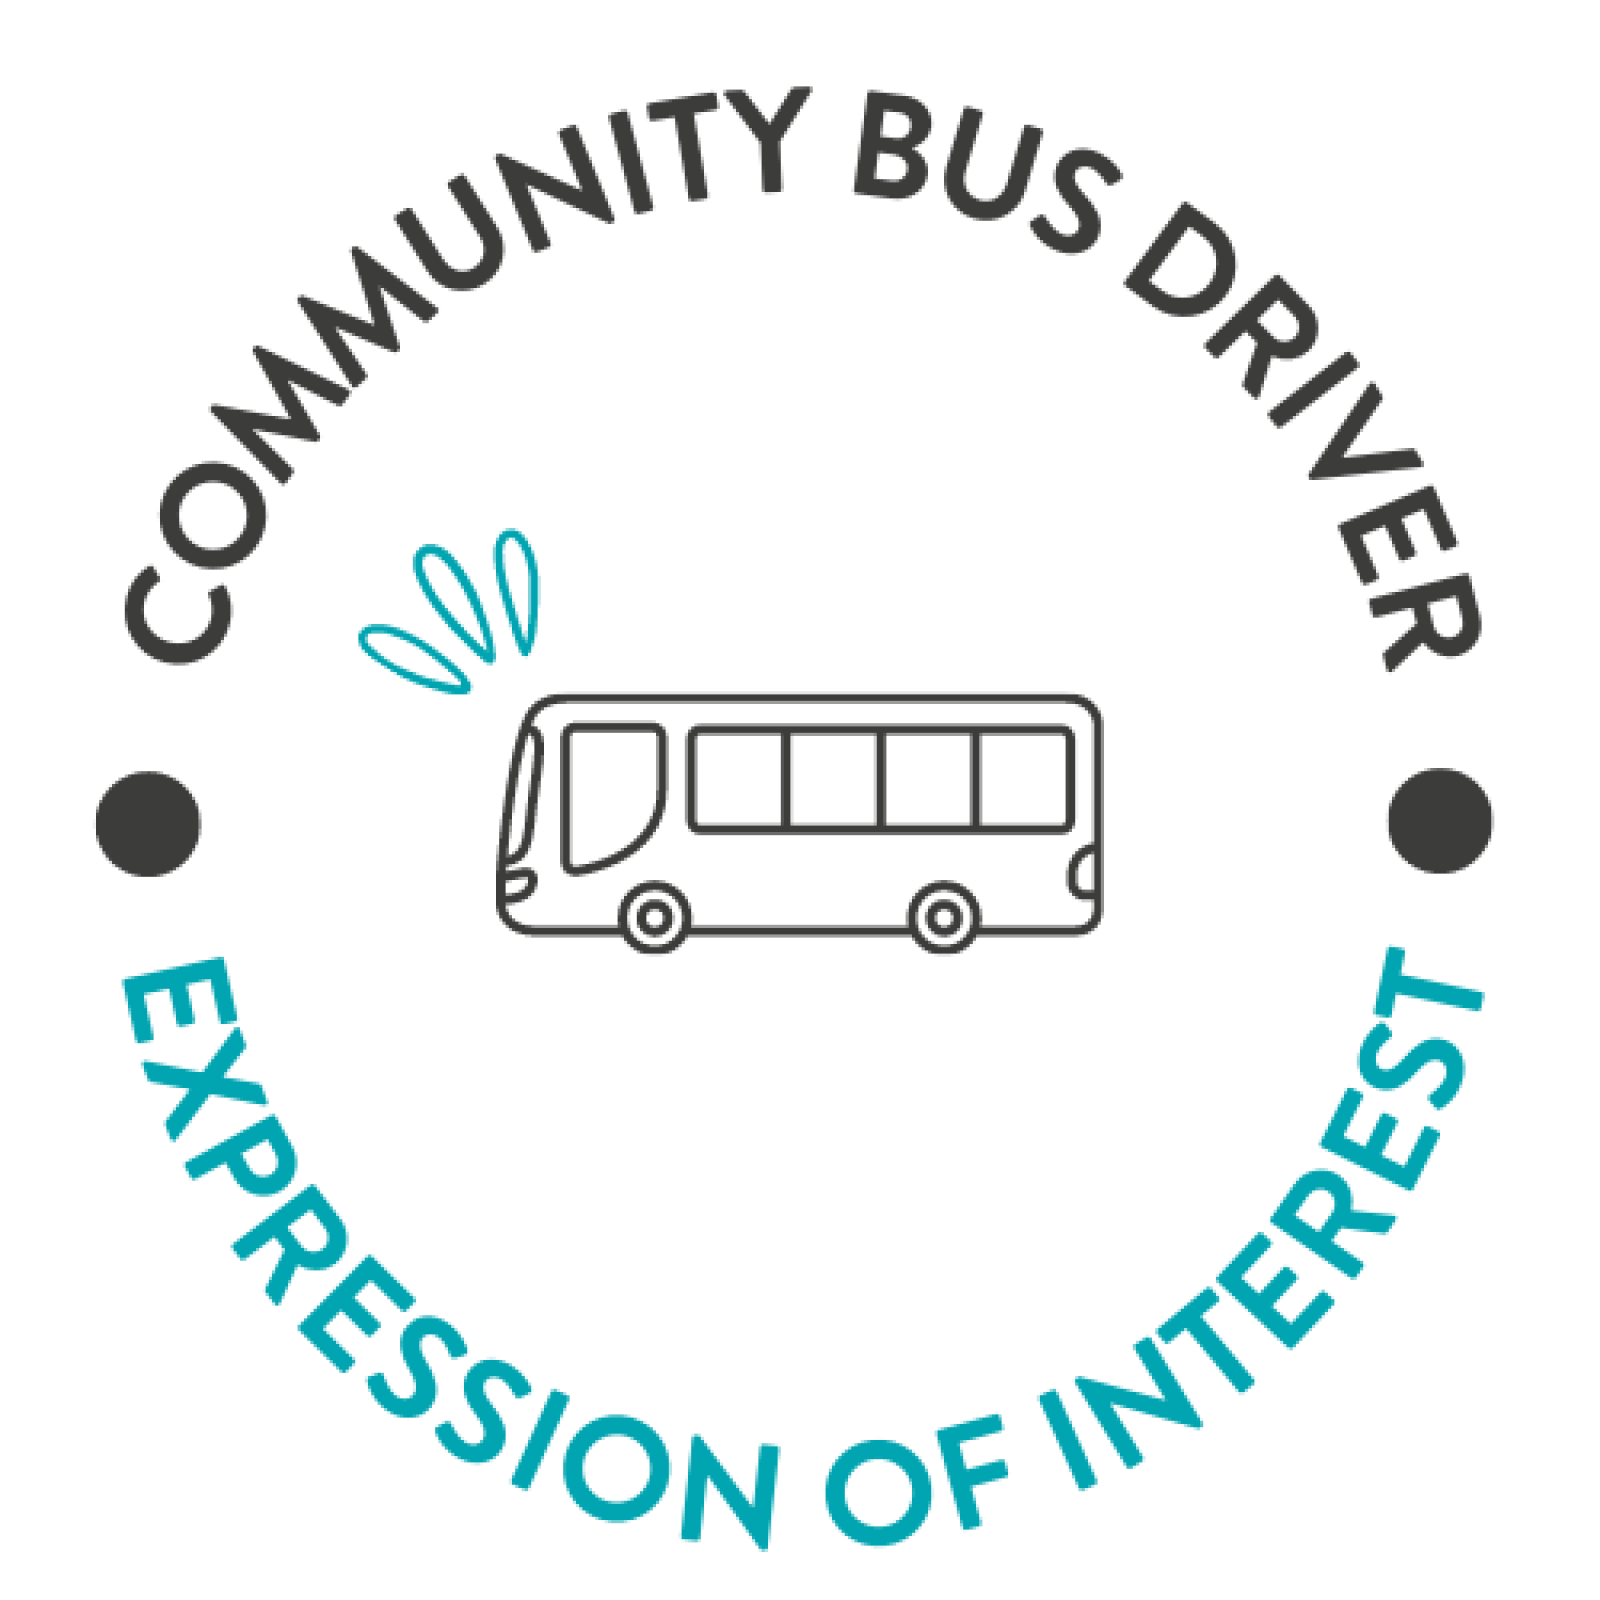 Community Bus Driver EOI